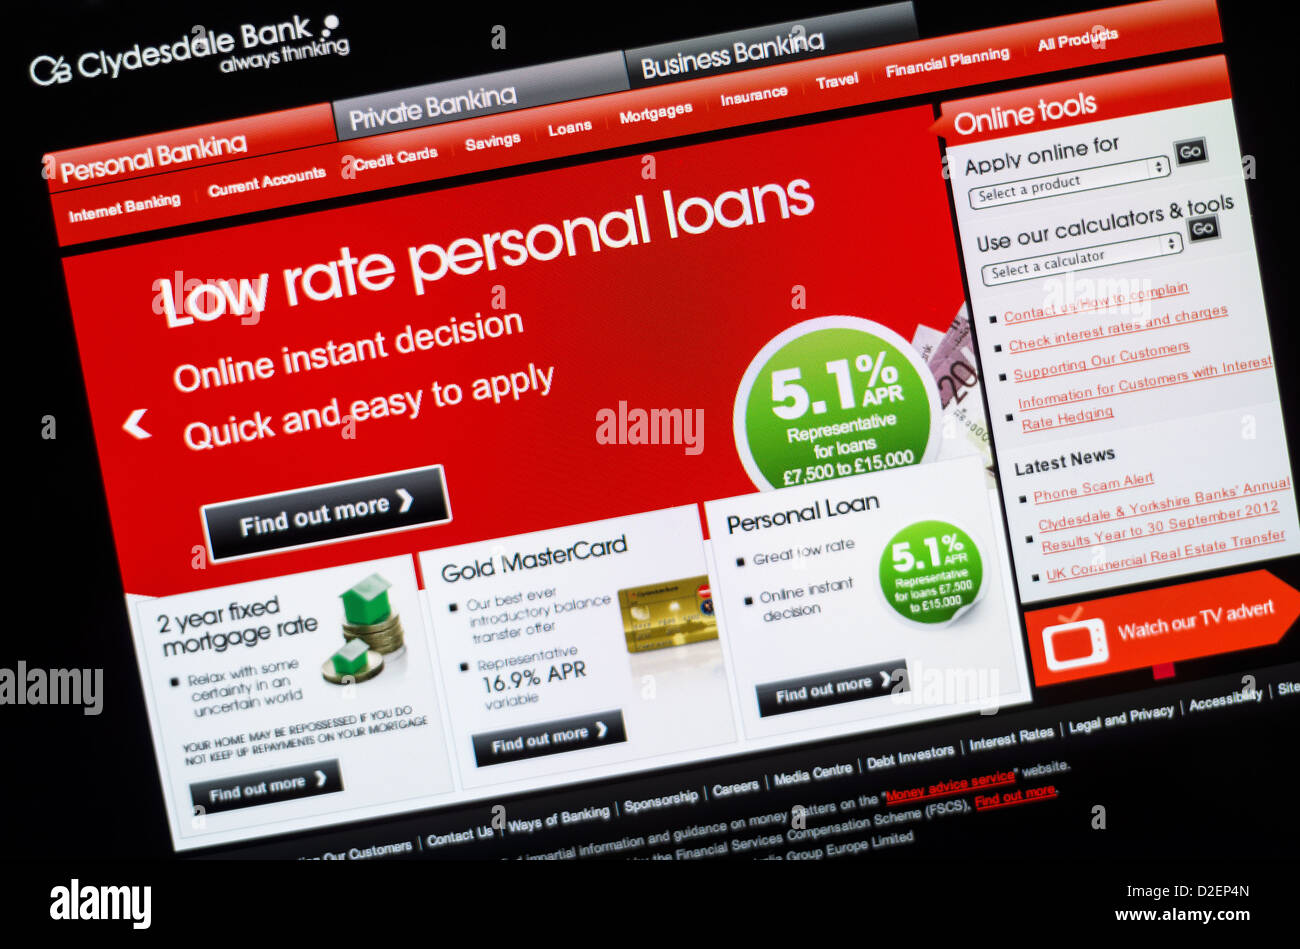 Banca di Clydesdale logo e sito web. Foto Stock